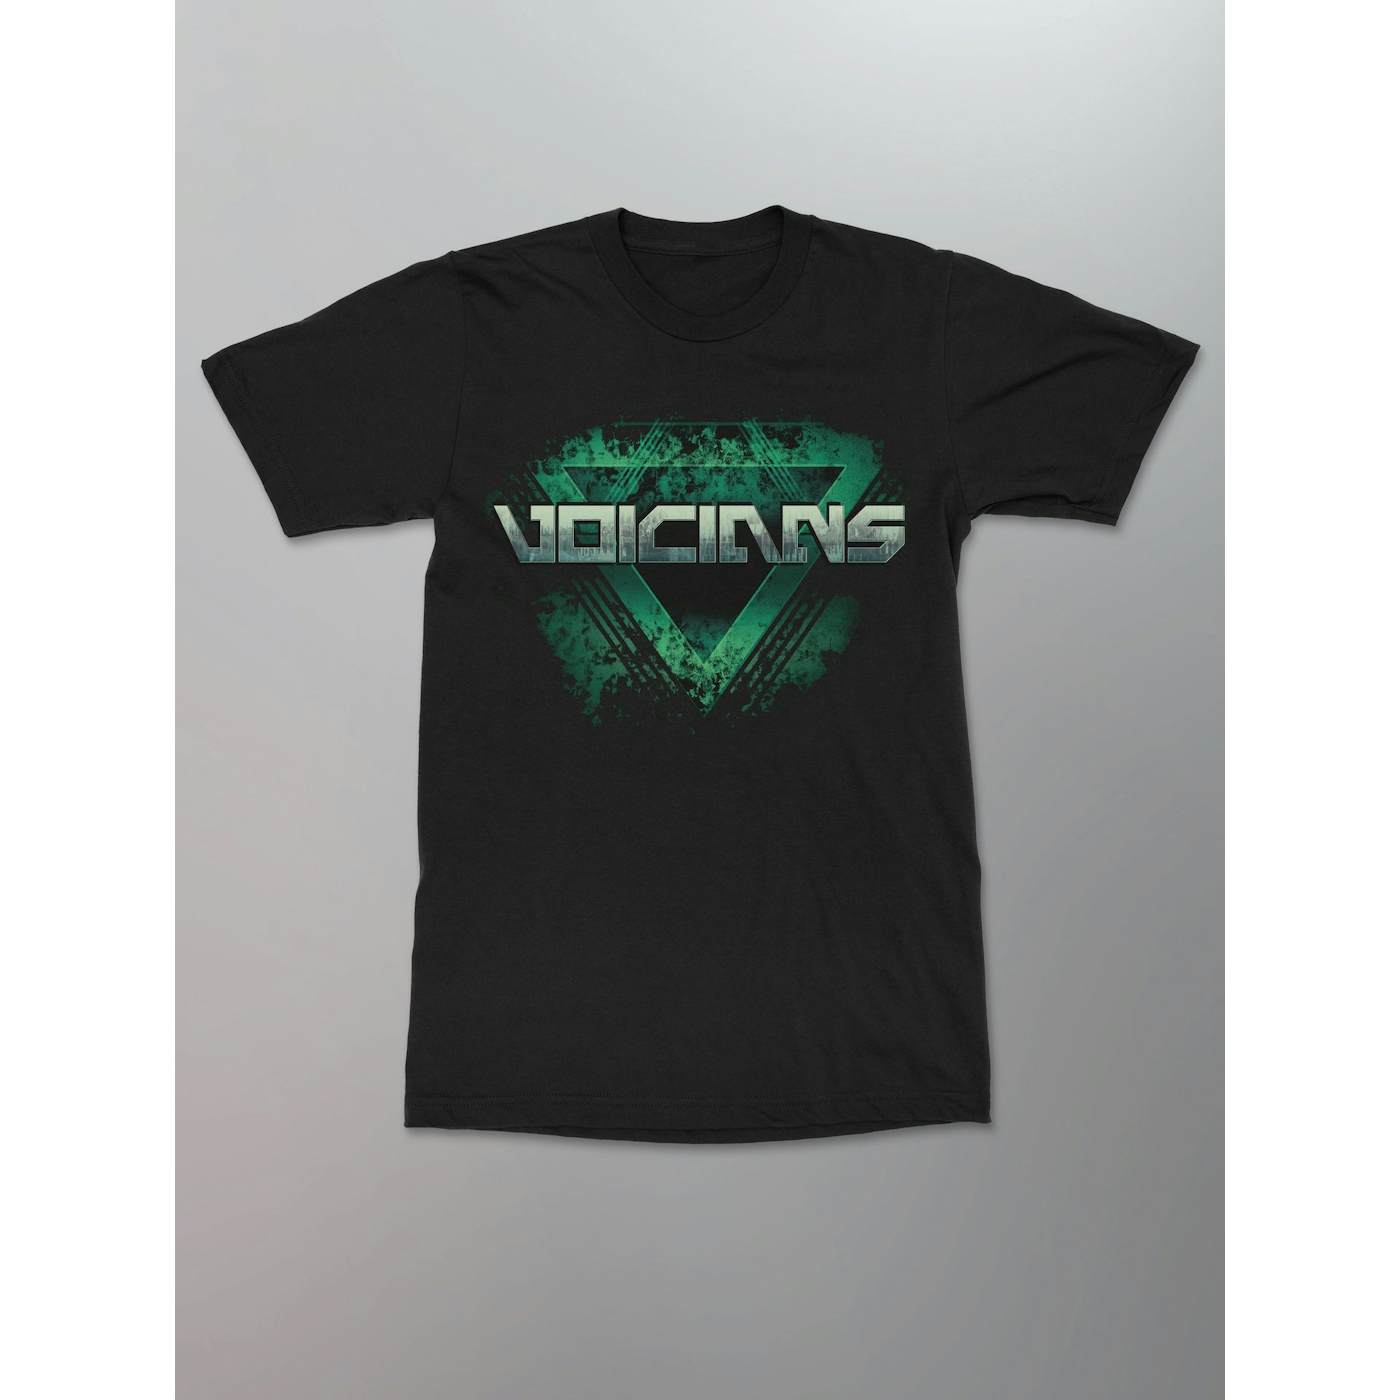 Voicians - Logo Shirt (Green)